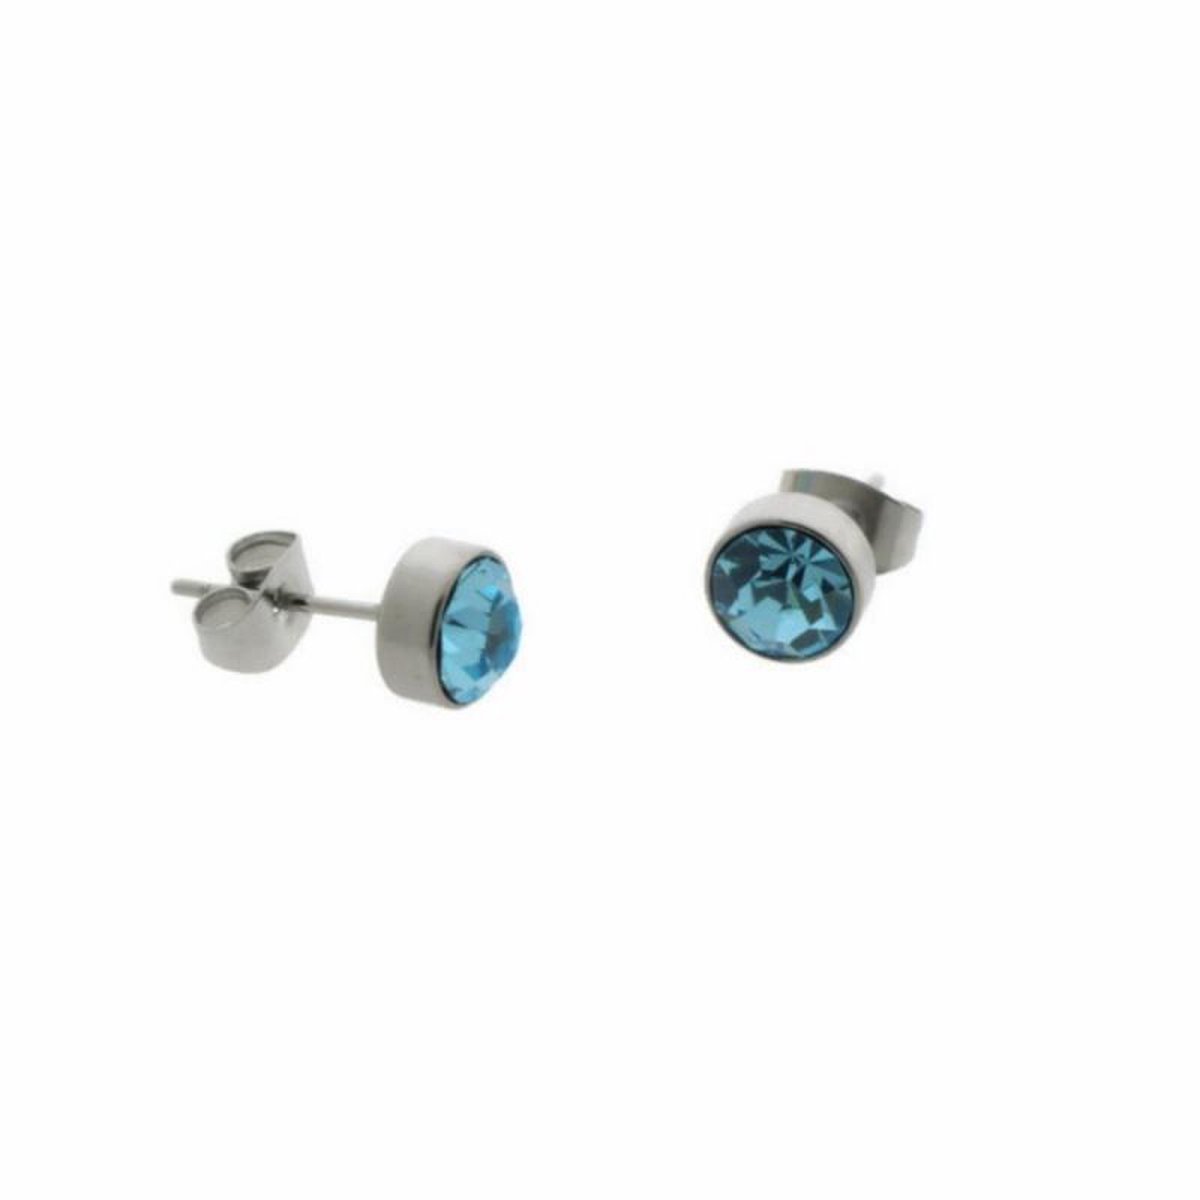 Aramat jewels ® - Zweerknopjes kristal licht blauw chirurgisch staal zilverkleurig 7mm